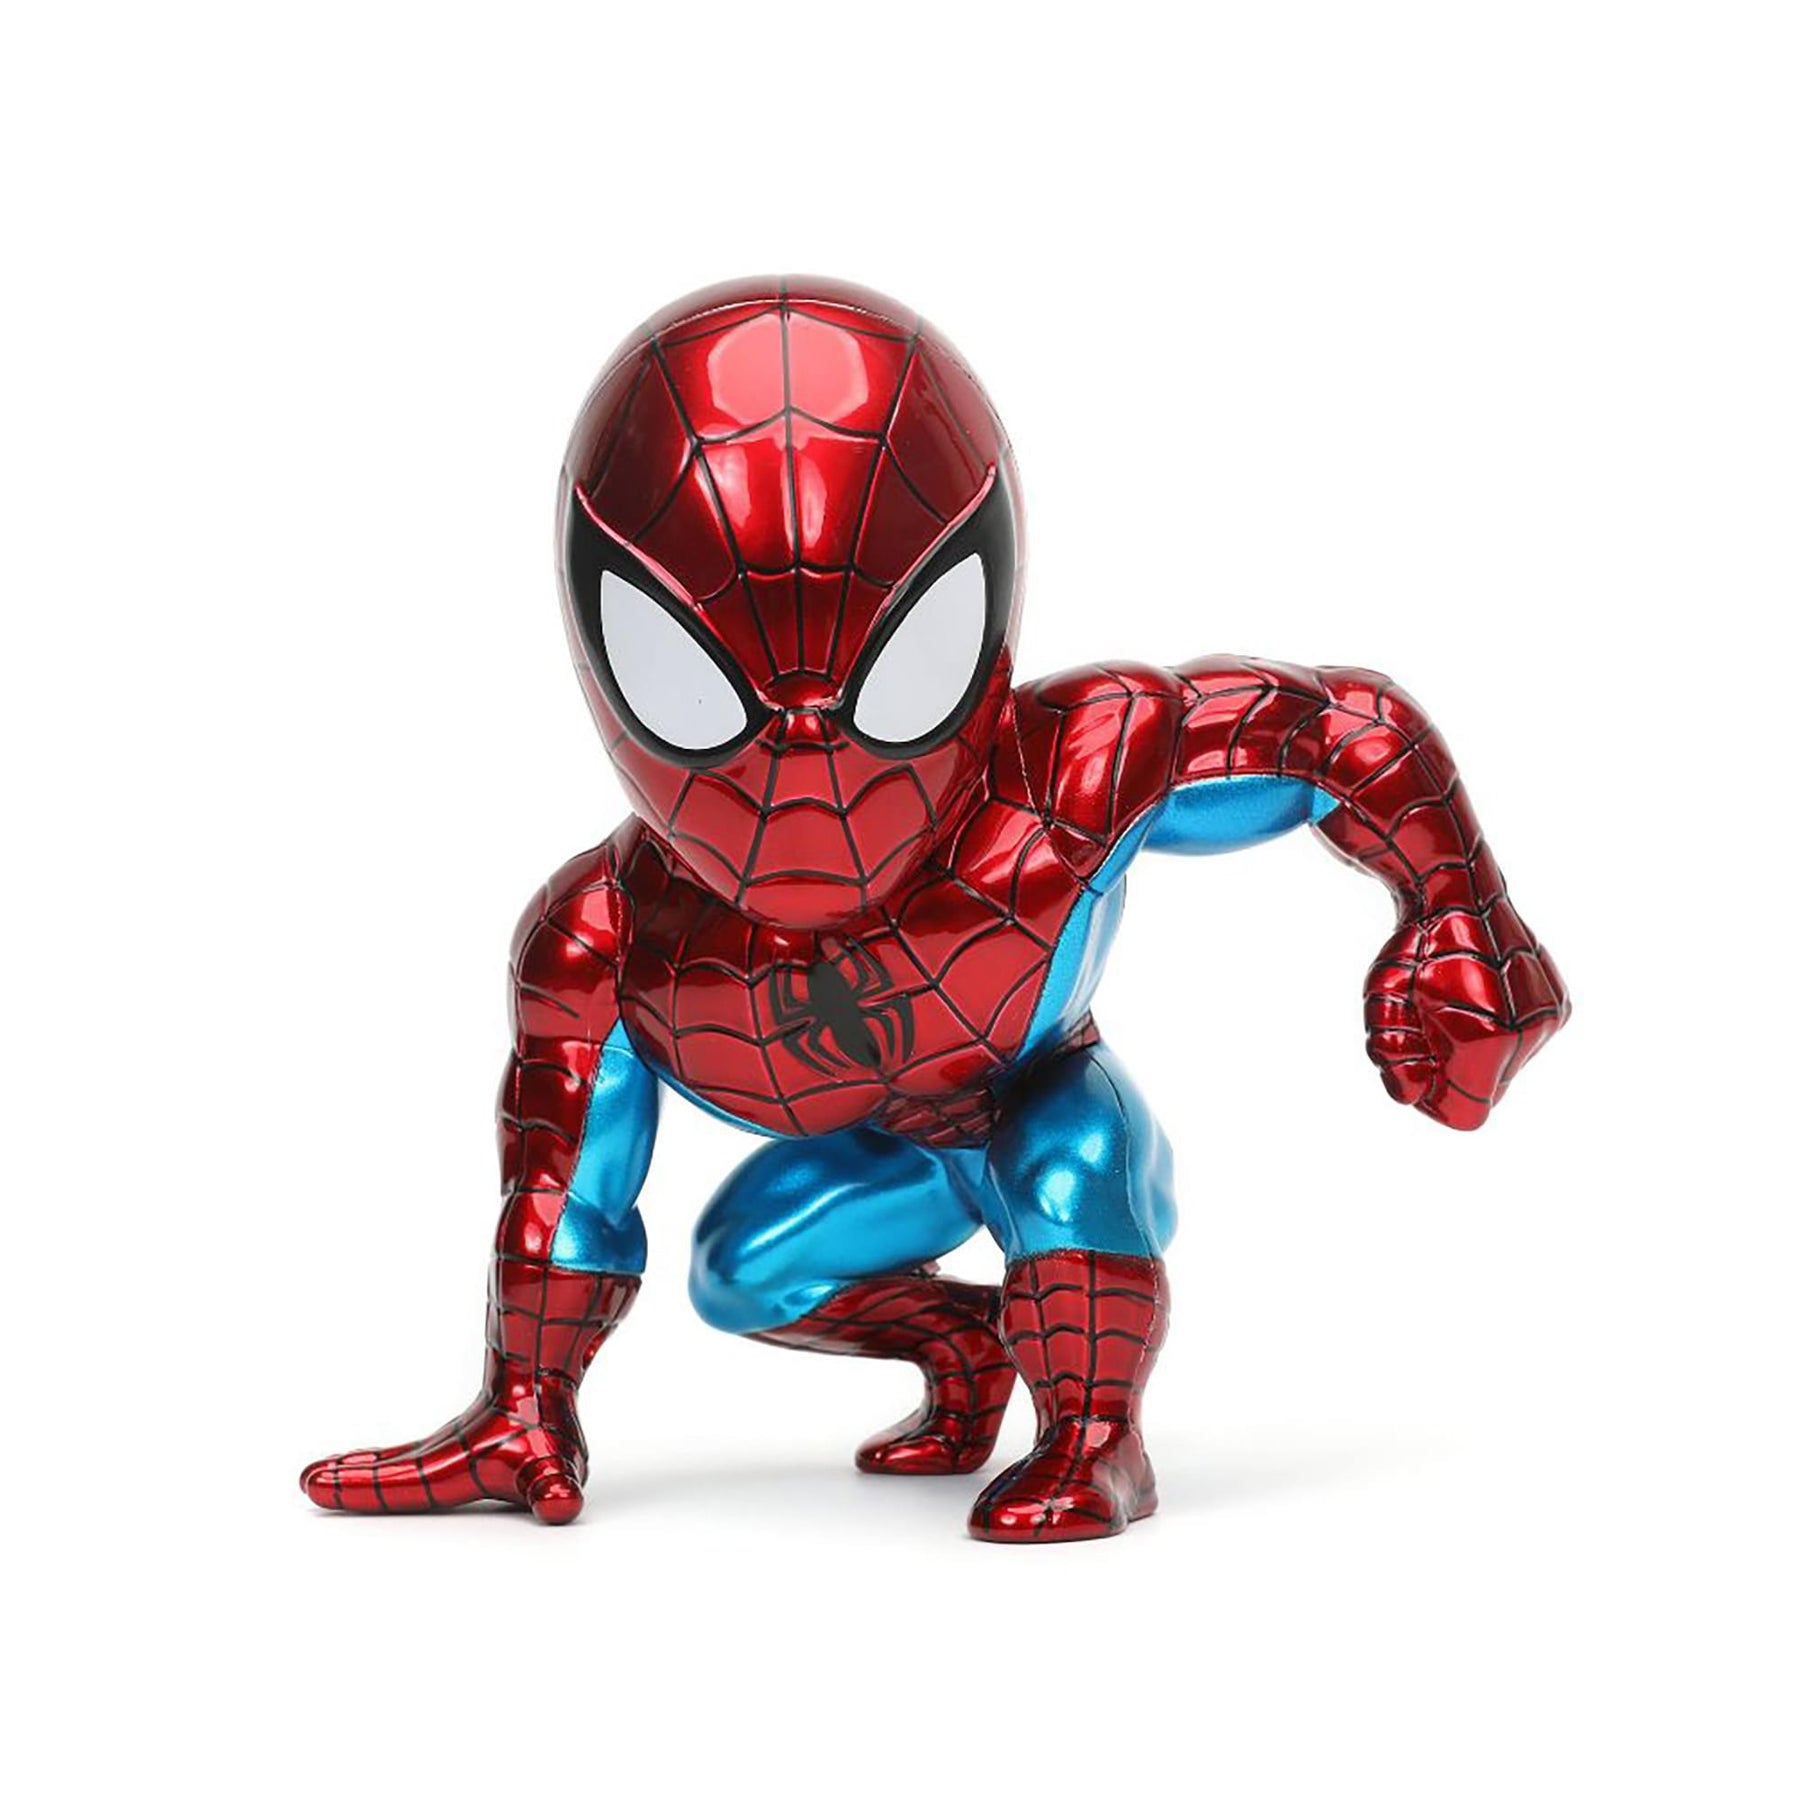 Marvel 6-Inch Spider-Man MetalFigs Diecast Collectible Figure